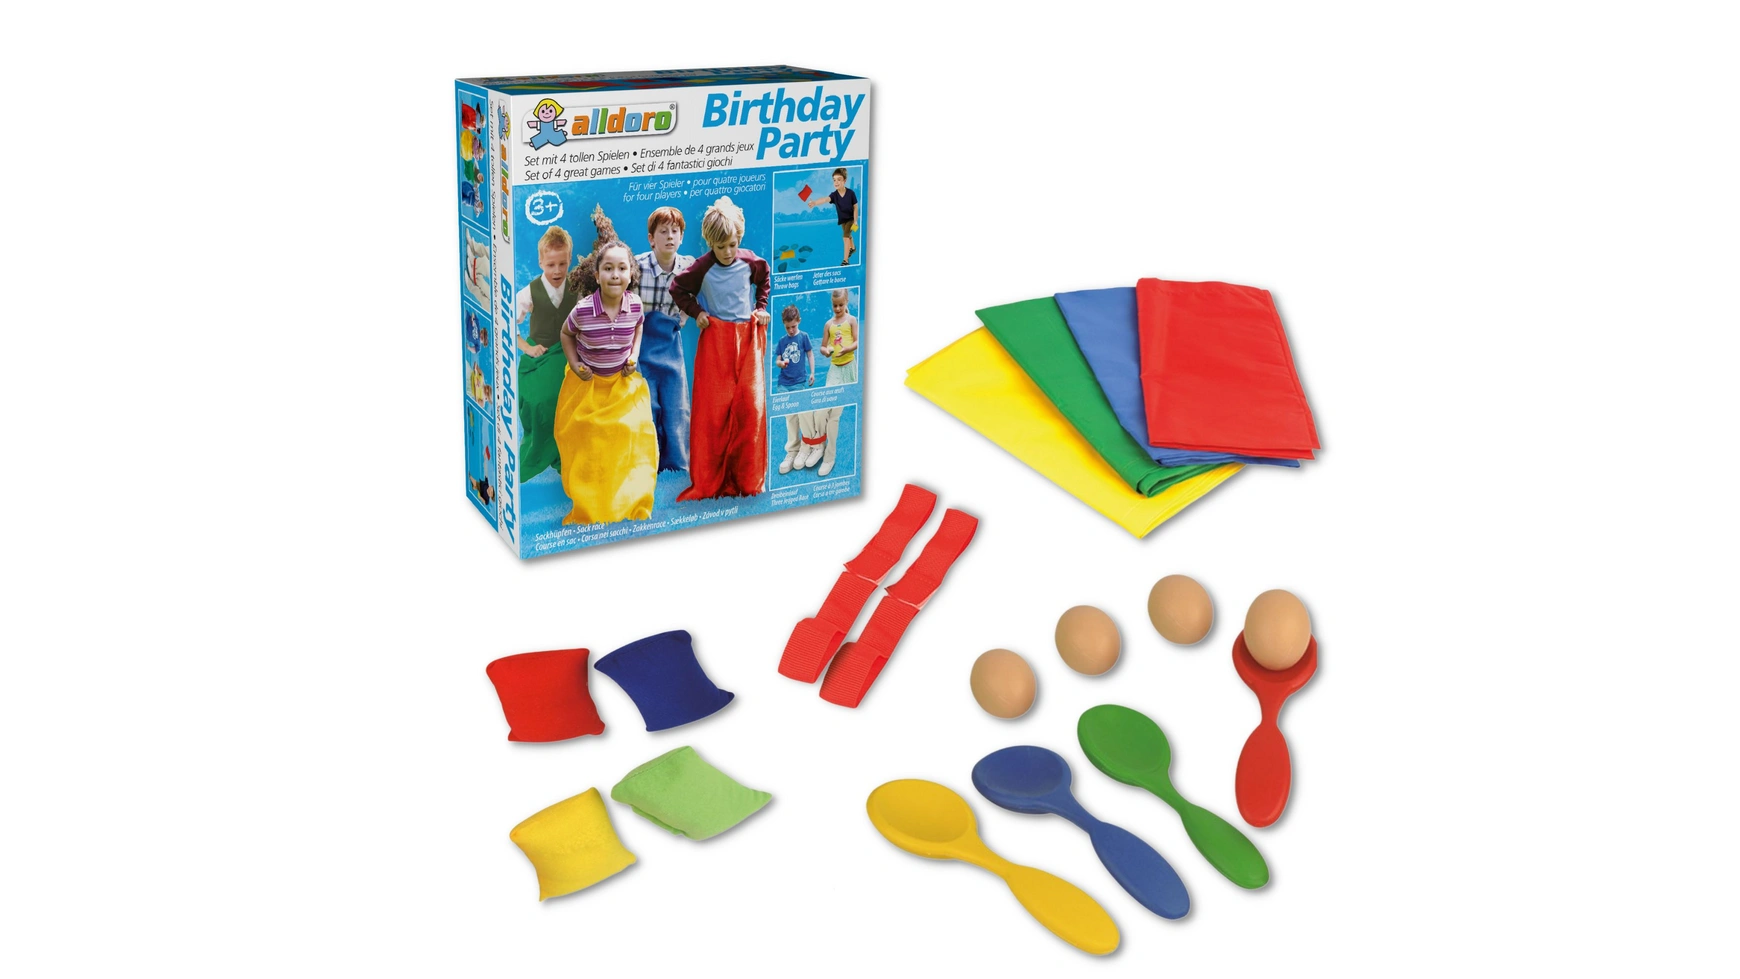 цена Alldoro Набор для вечеринки по случаю дня рождения с 4 популярными играми для детских дней рождения